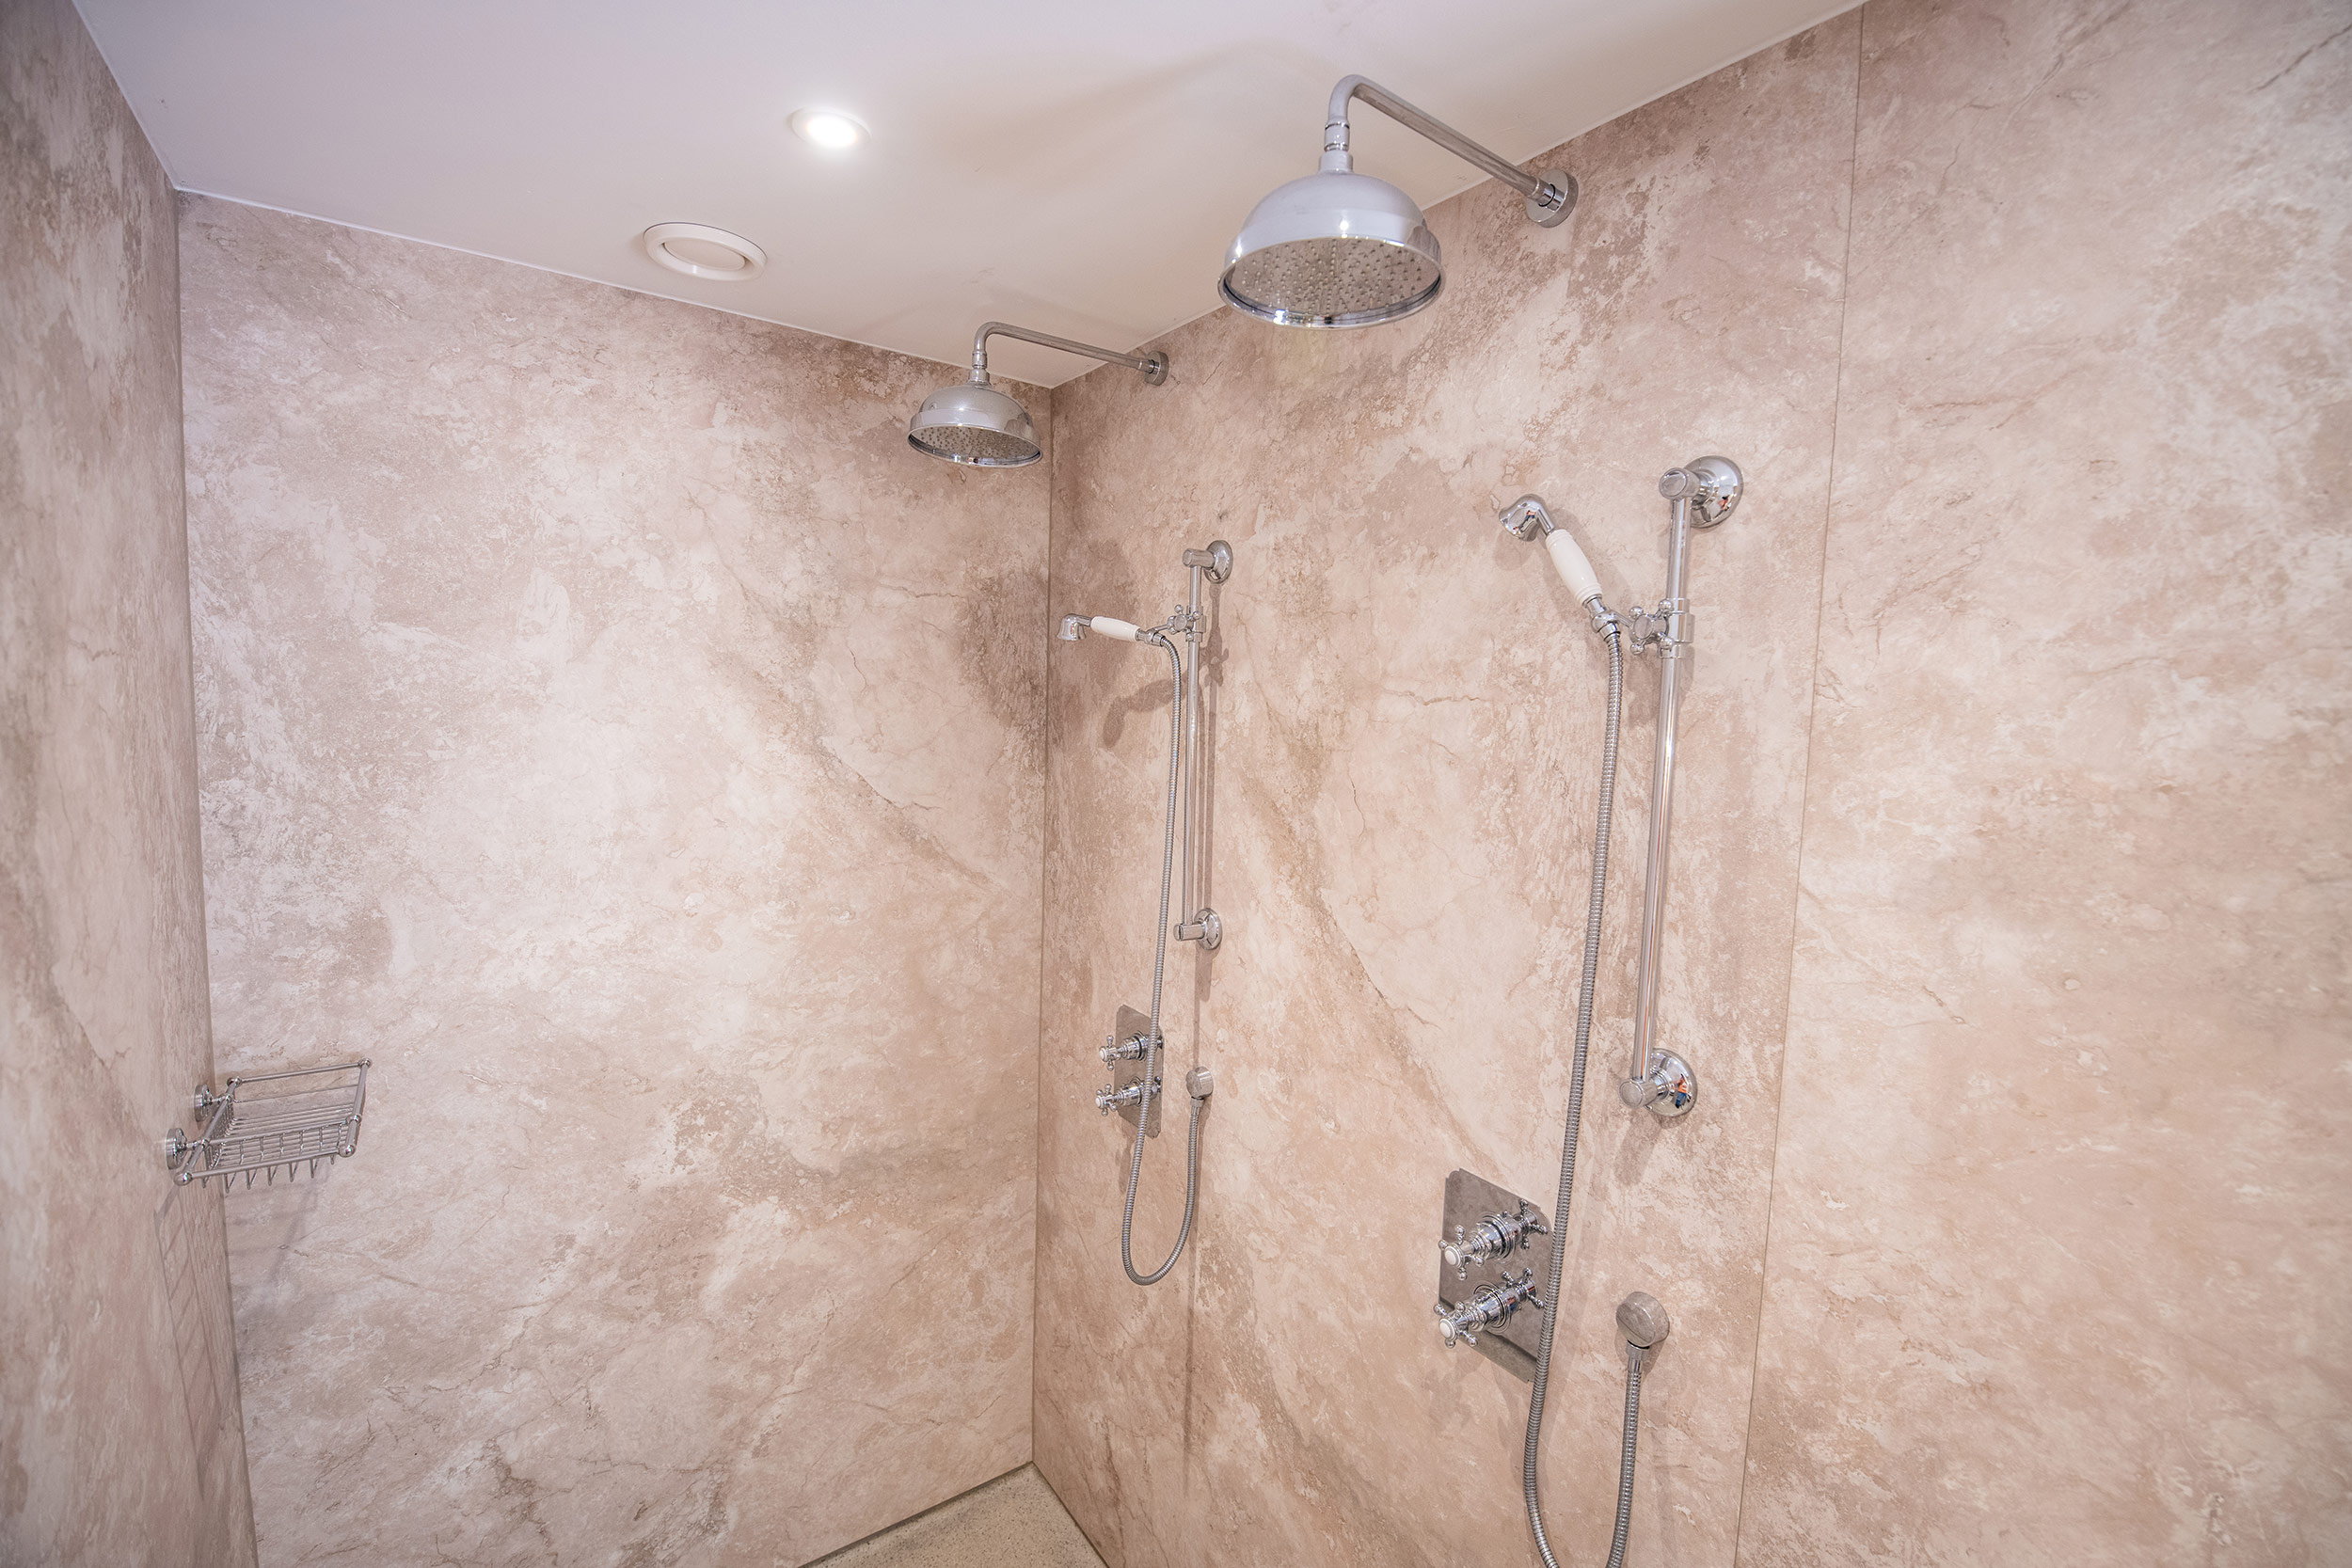 Marmerlook wandpanelen in de douches van een luxe badkamer. De voegloze wandpanelen zijn rechtstreeks over tegels geplakt met een sterke lijm.